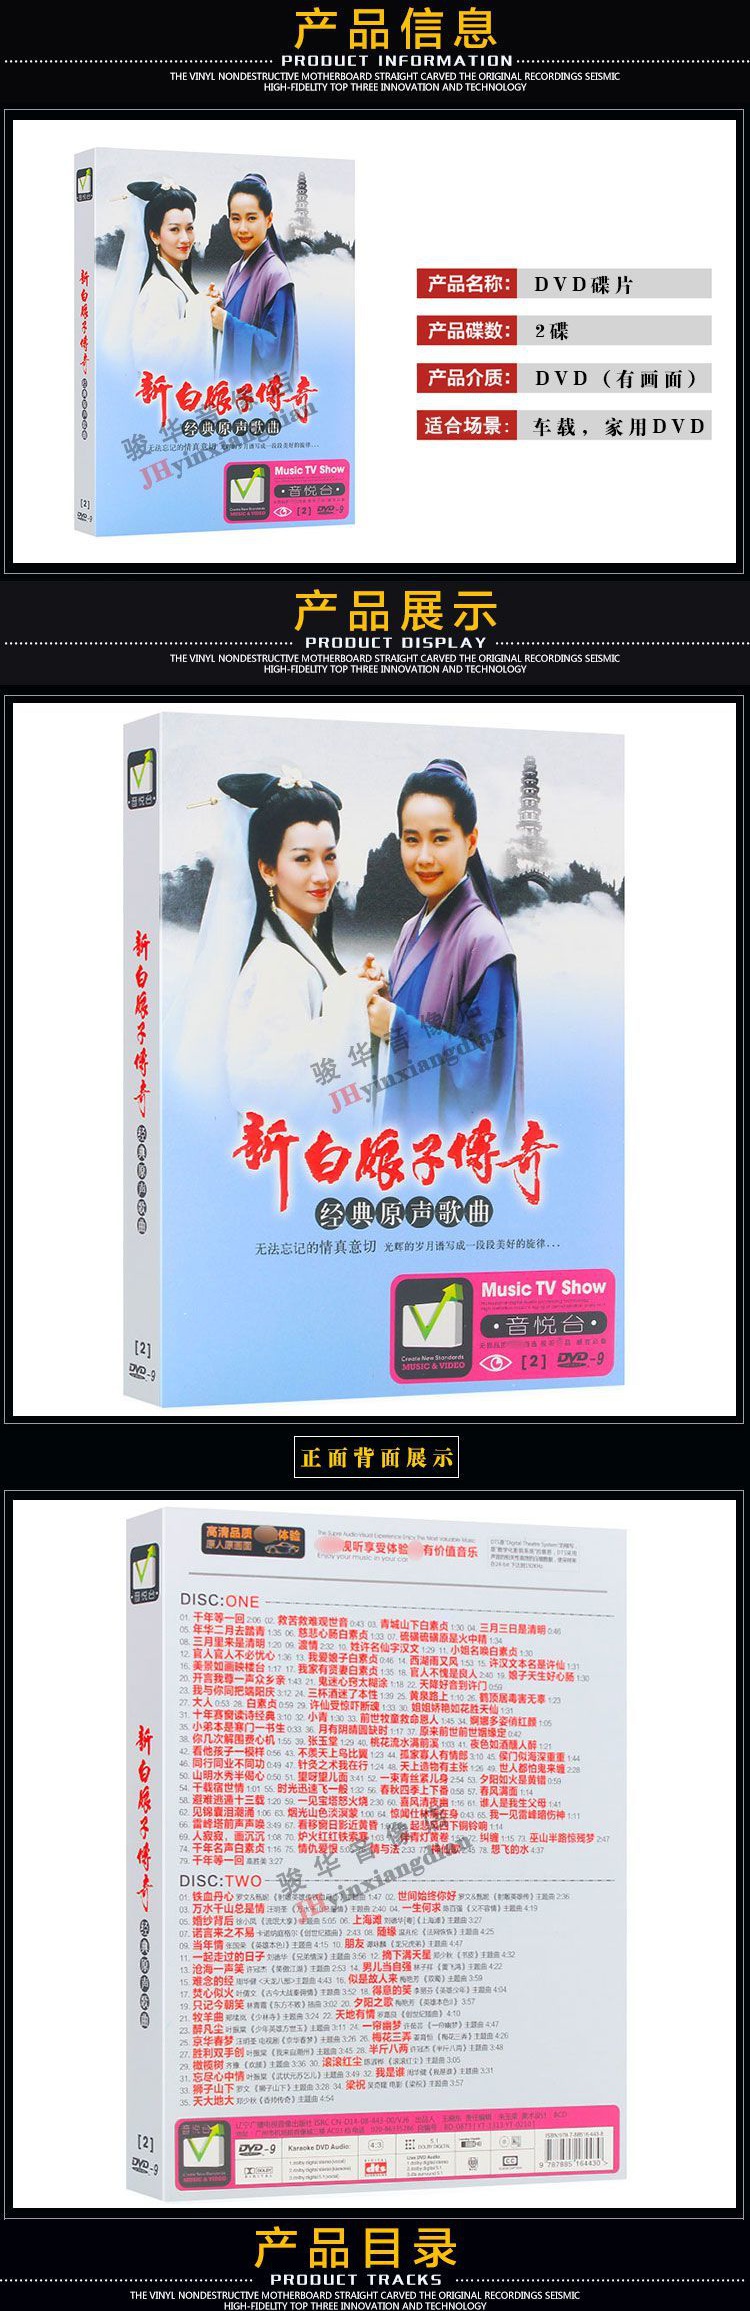 新白娘子传奇台湾版DVD图片